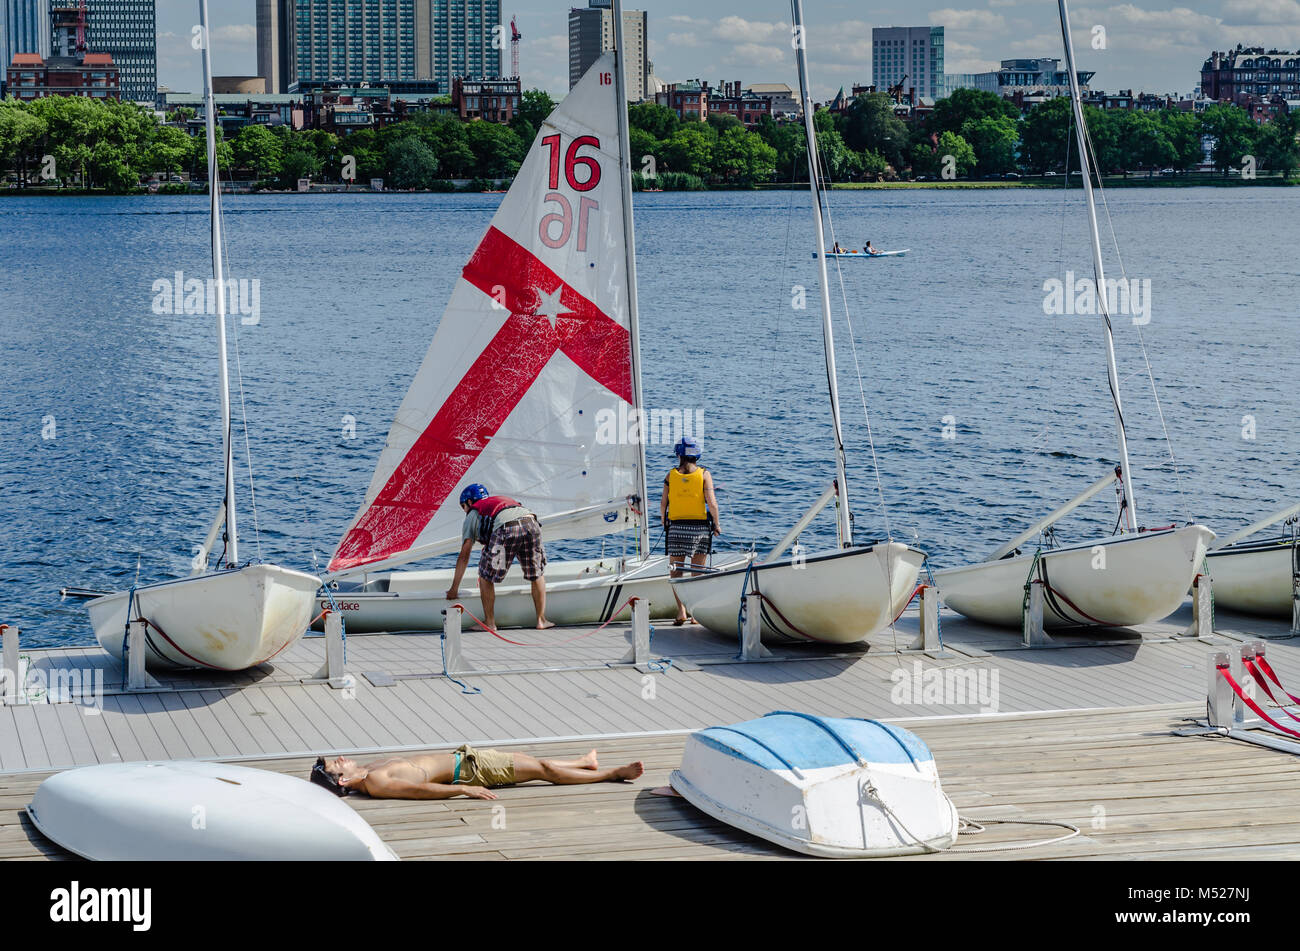 Dal 1935, MIT vela pavilion è stato dove migliaia di persone nell'area di Boston hanno appreso e messo a punto la barca a vela e corse sul fiume Charles. Foto Stock